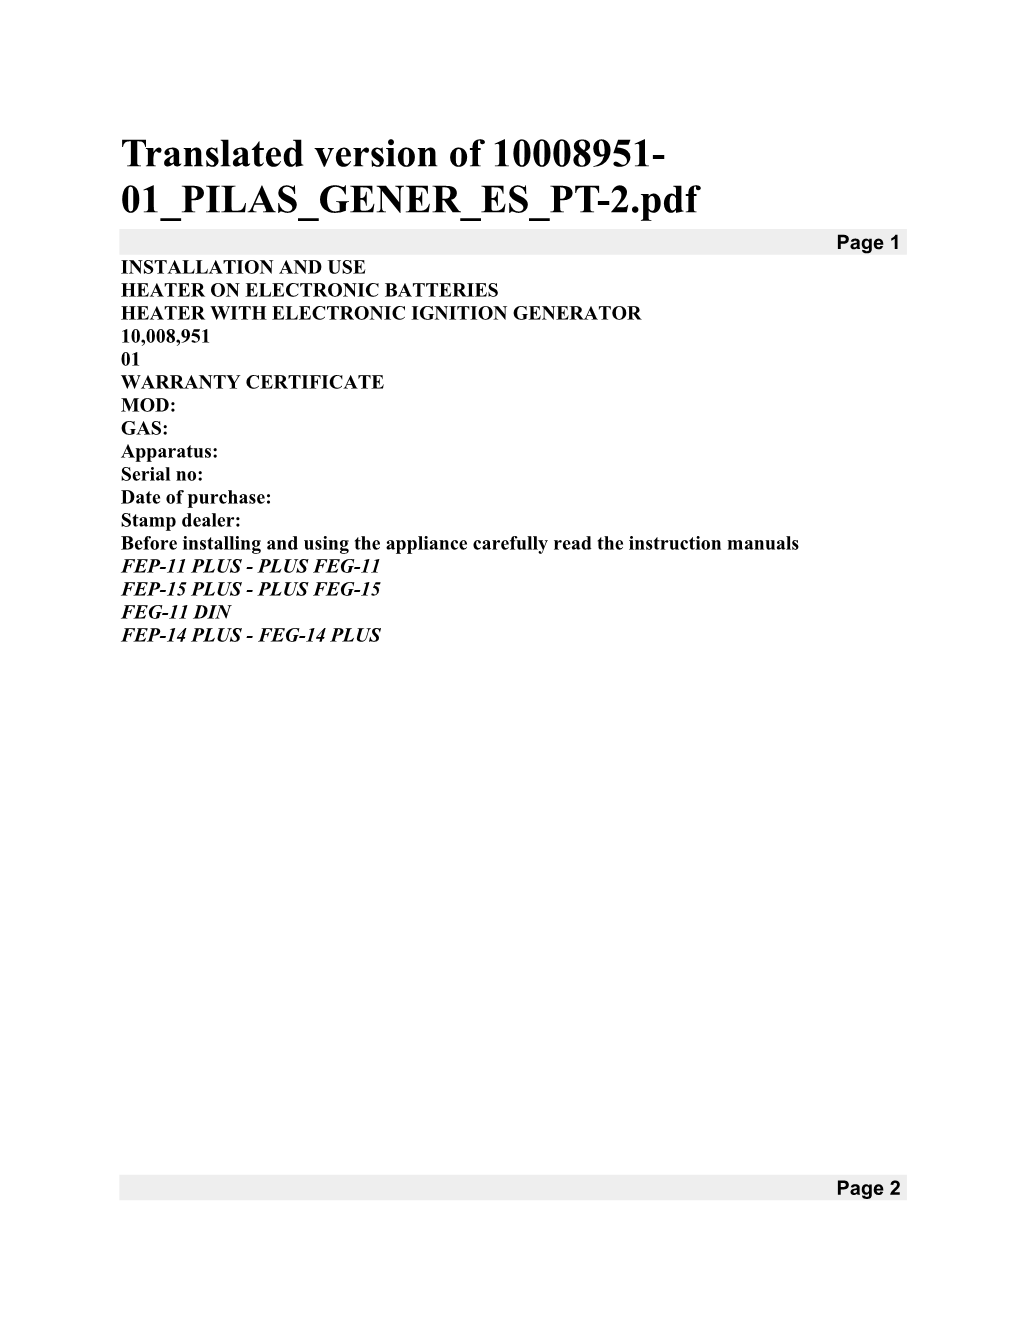 Translated Version of 10008951-01 PILAS GENER ES PT-2.Pdf